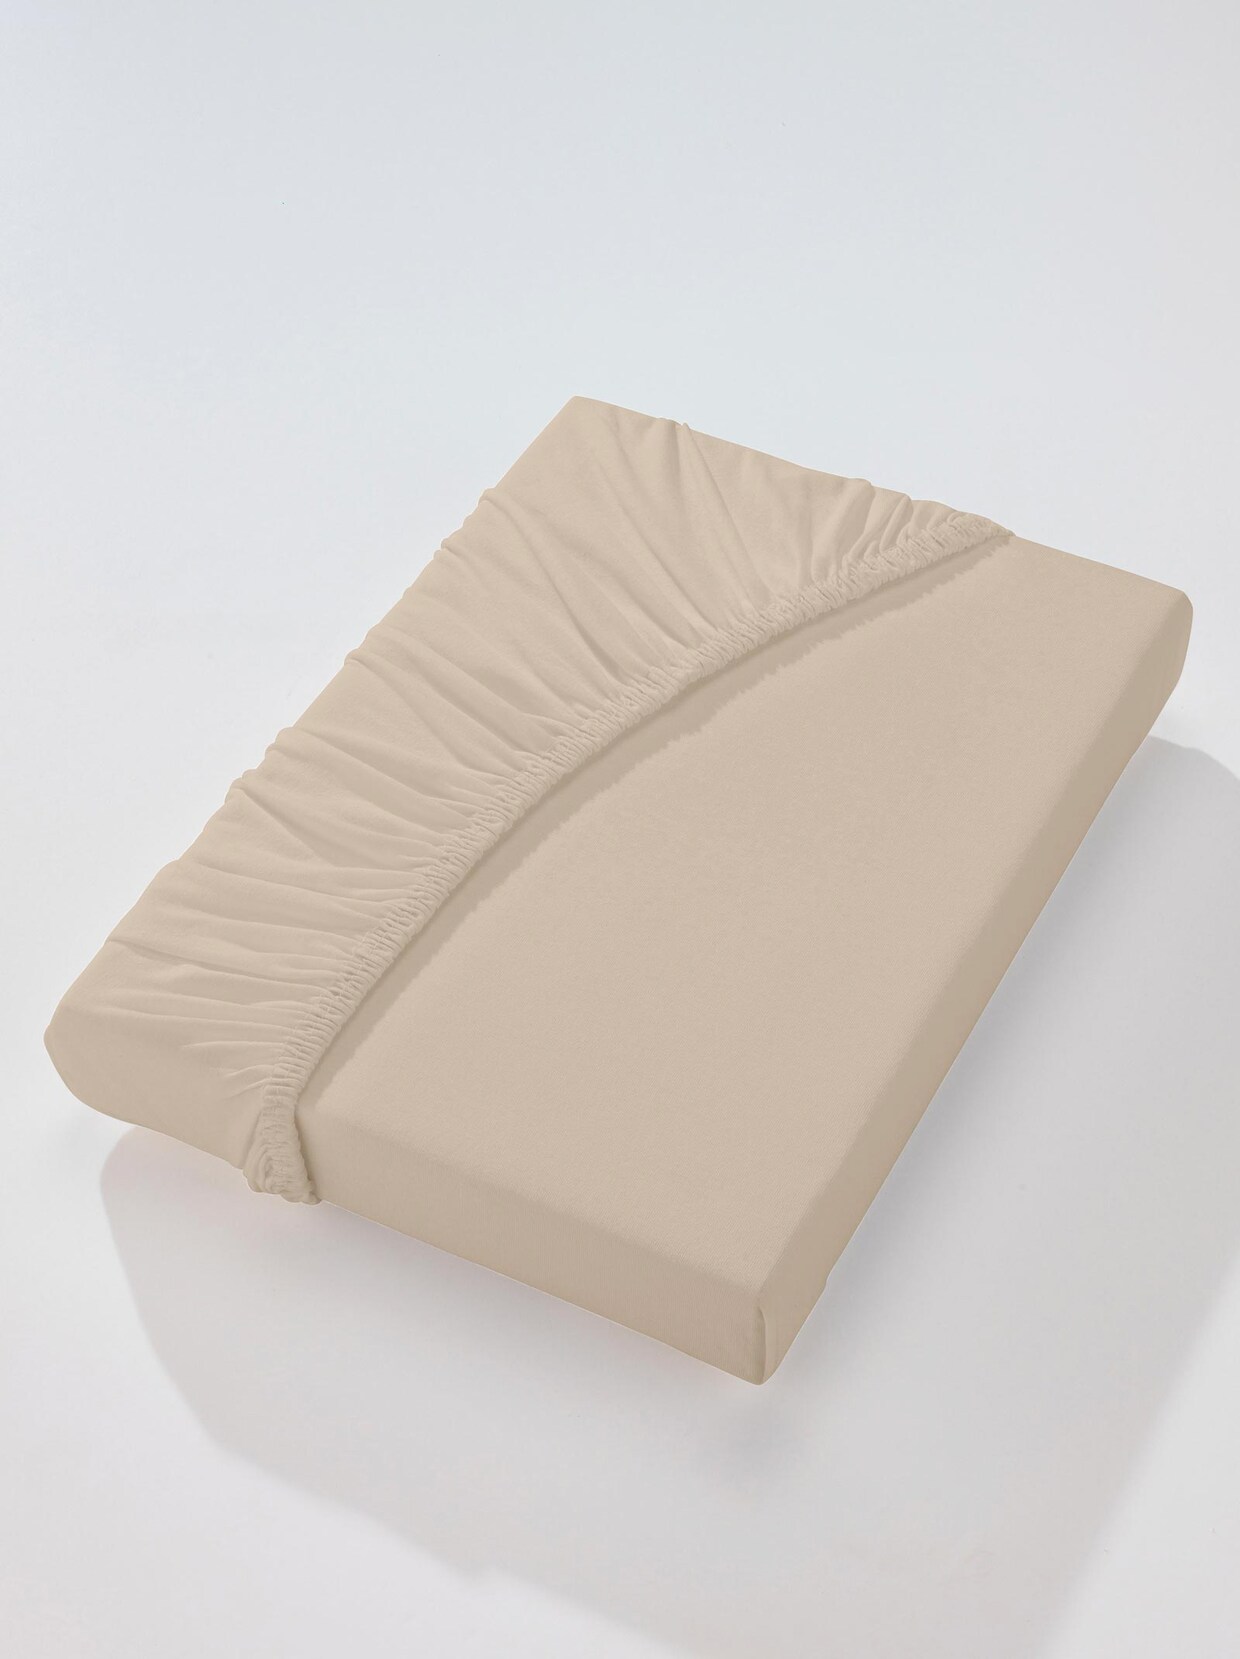 Bettlaken baumwolle - Die ausgezeichnetesten Bettlaken baumwolle ausführlich verglichen